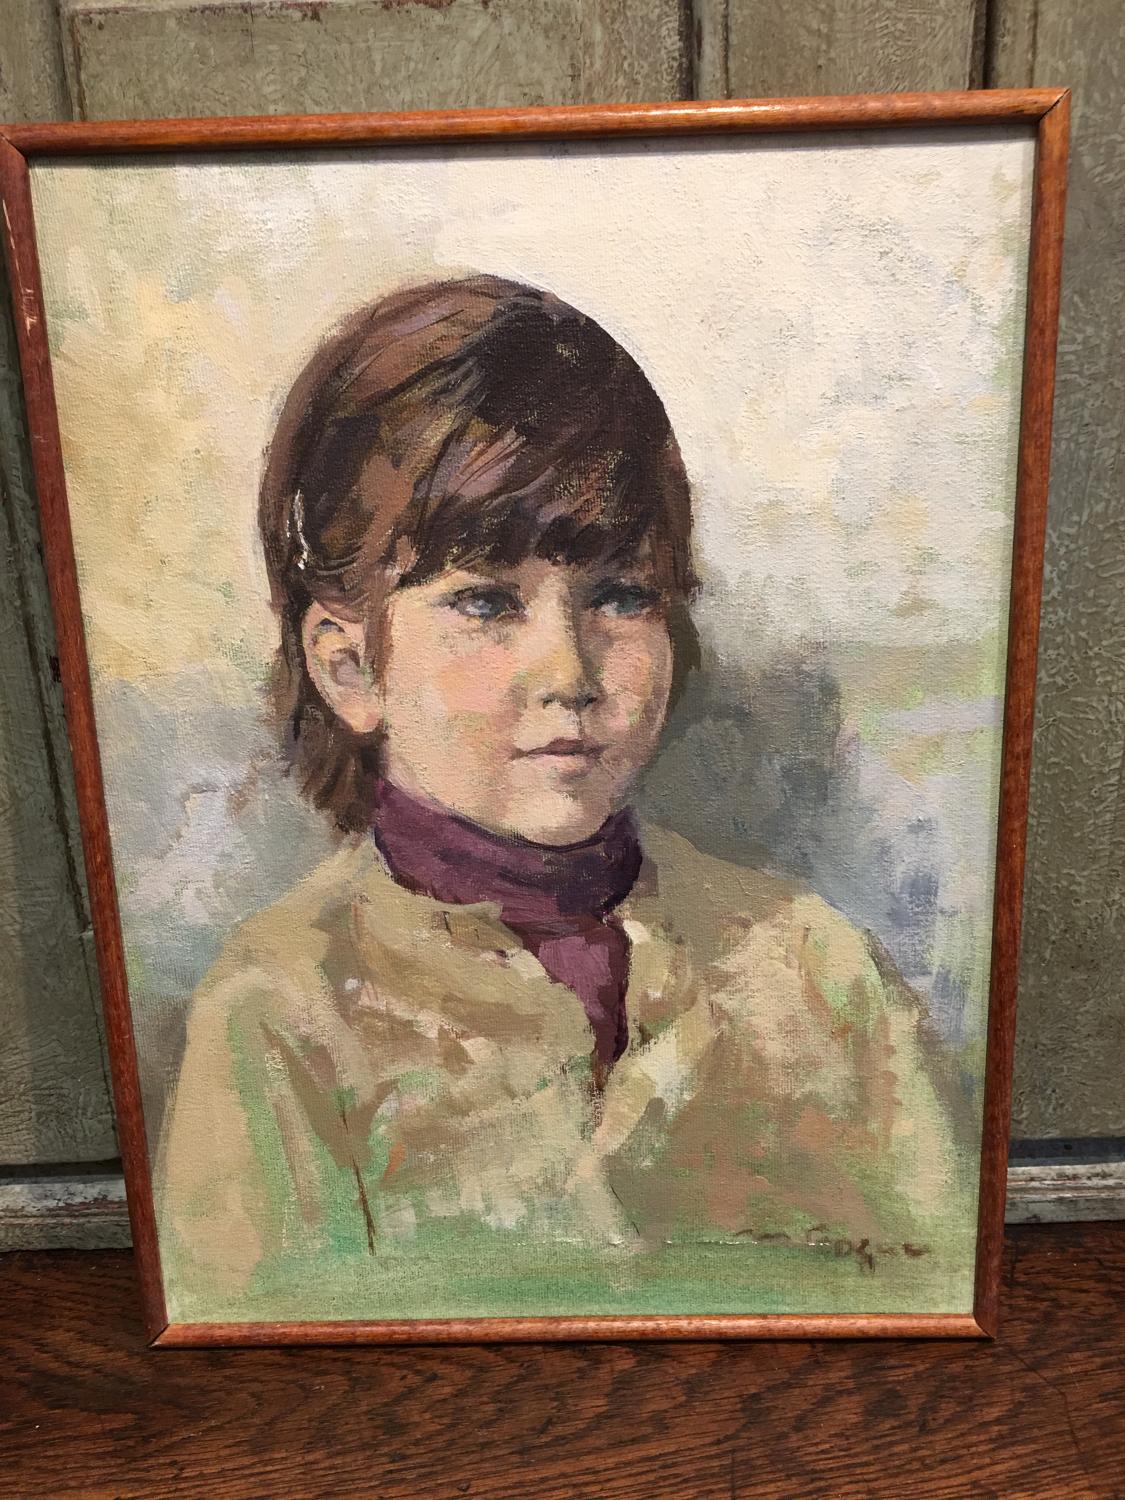 Framed oil painting of child